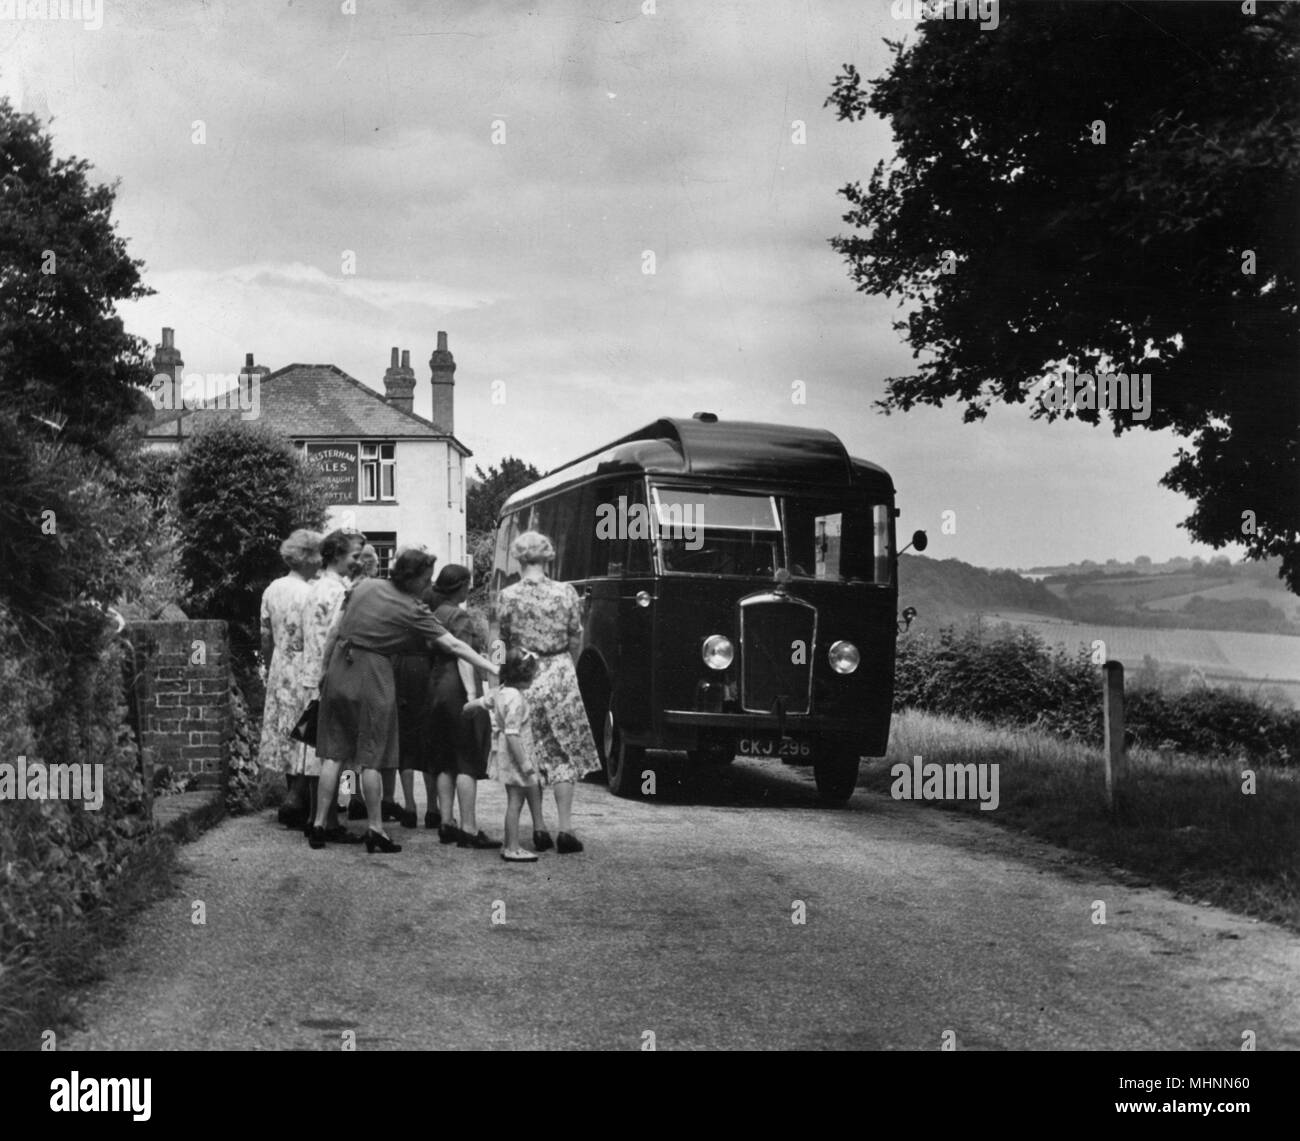 Línea de lectores entusiastas hasta entrar en una biblioteca móvil en una aldea rural no identificado en la década de 1950. Fecha: 1950 Foto de stock